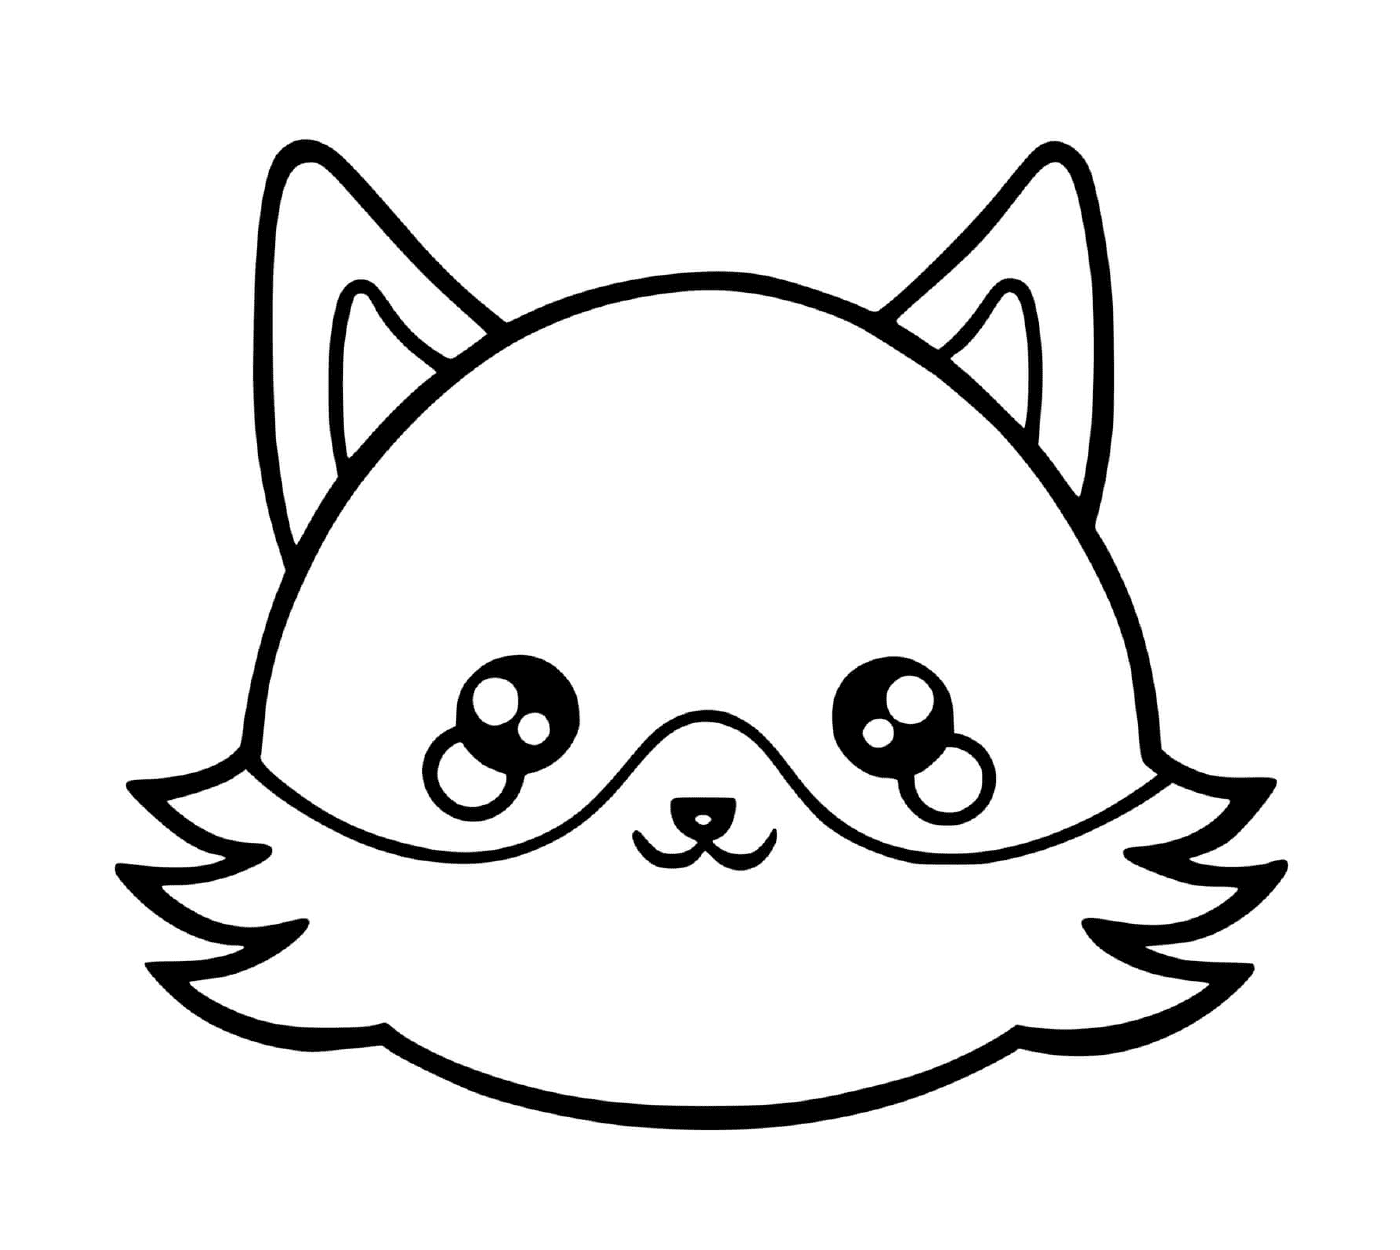  Um animal com um rosto de gato desenhado sobre ele 